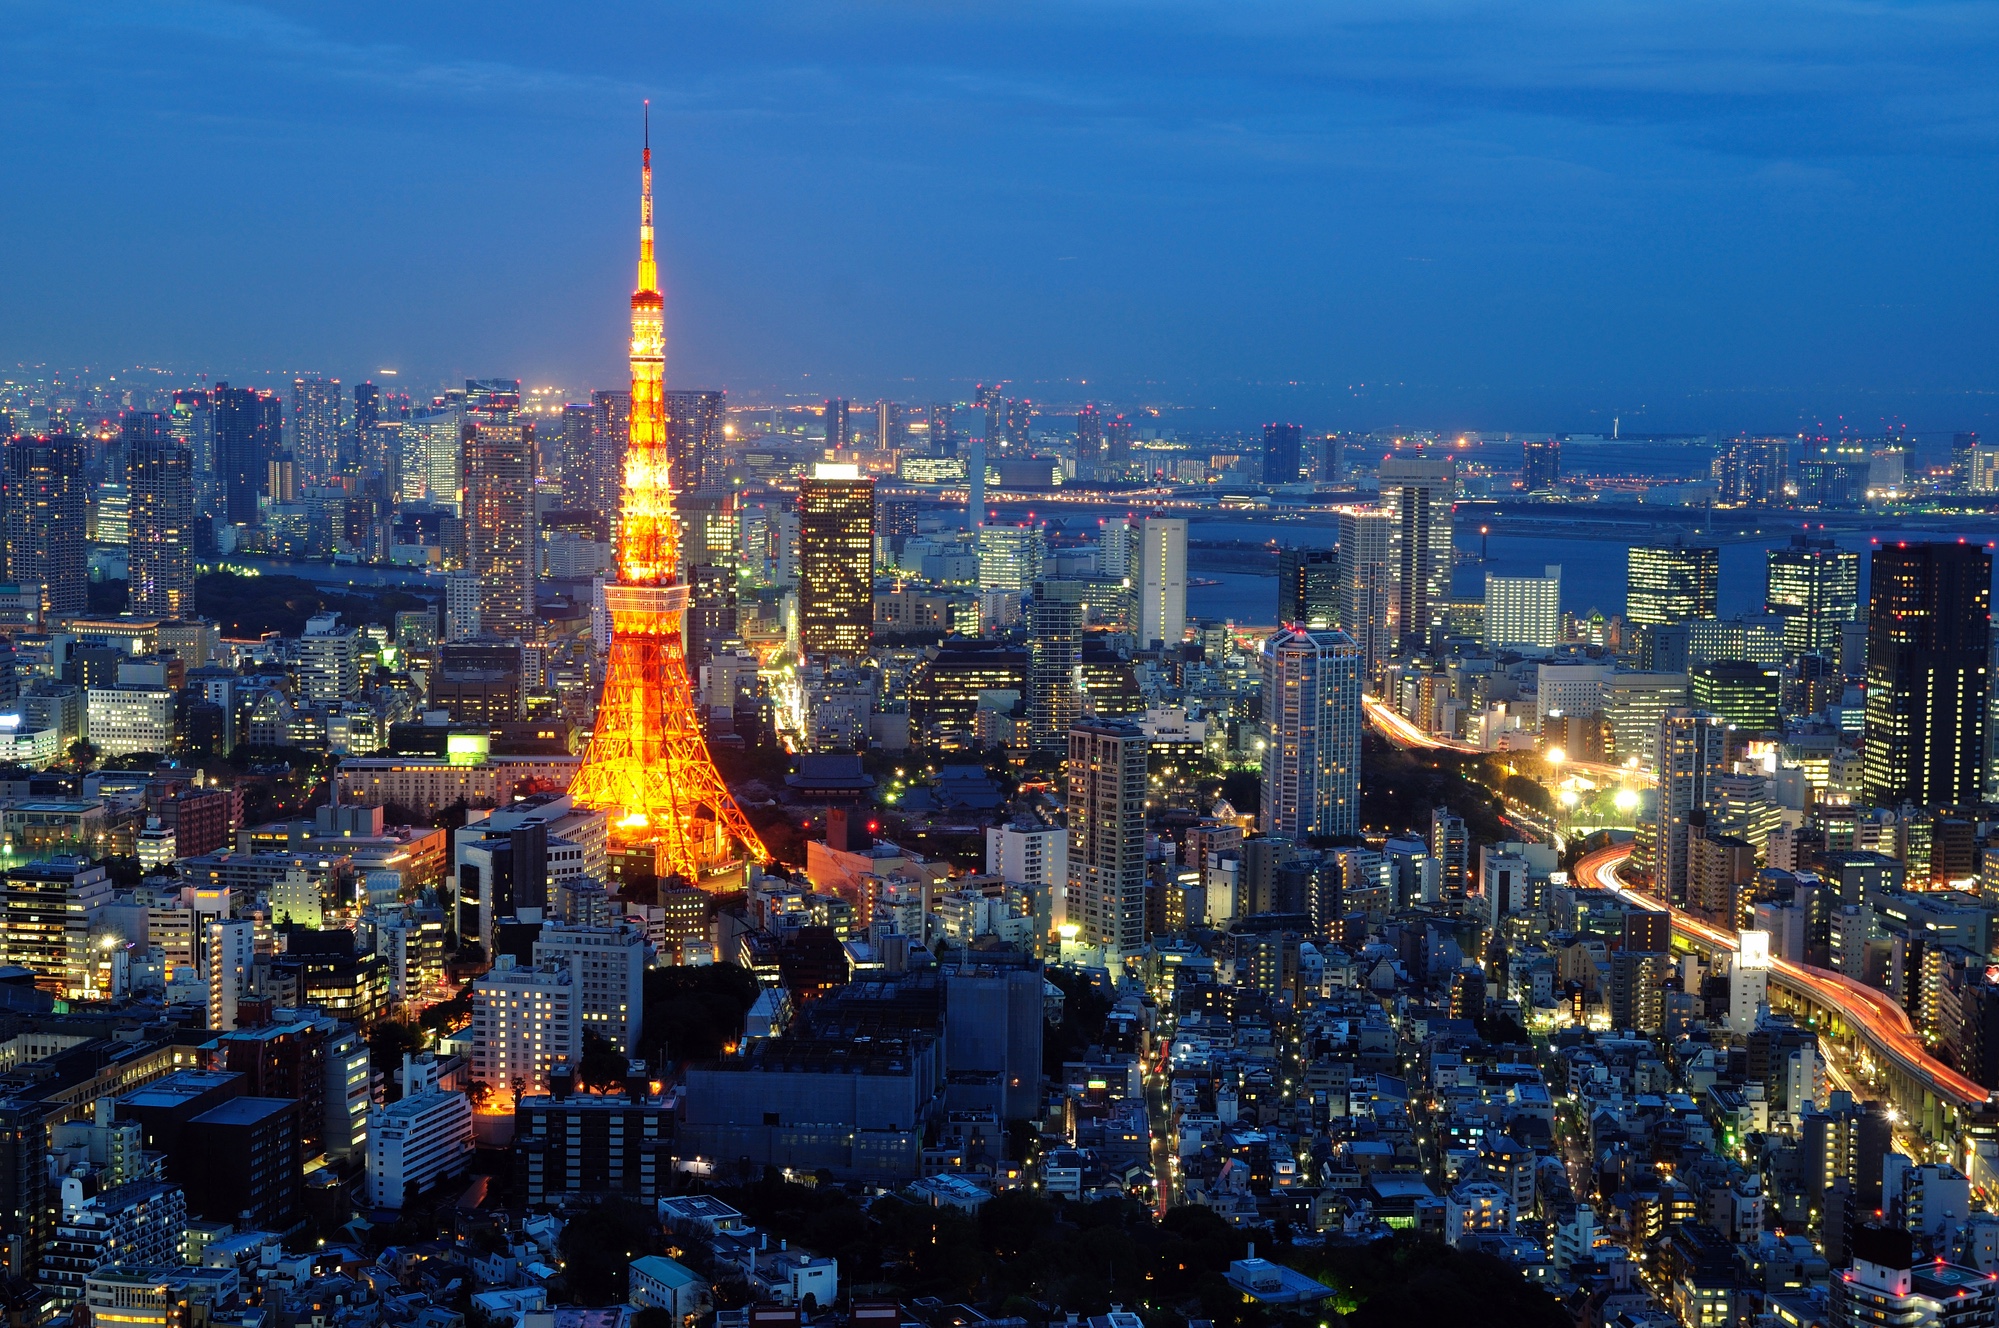 Tokio wird in den kommenden zwei Wochen im Zentrum der Aufmerksamkeit stehen.